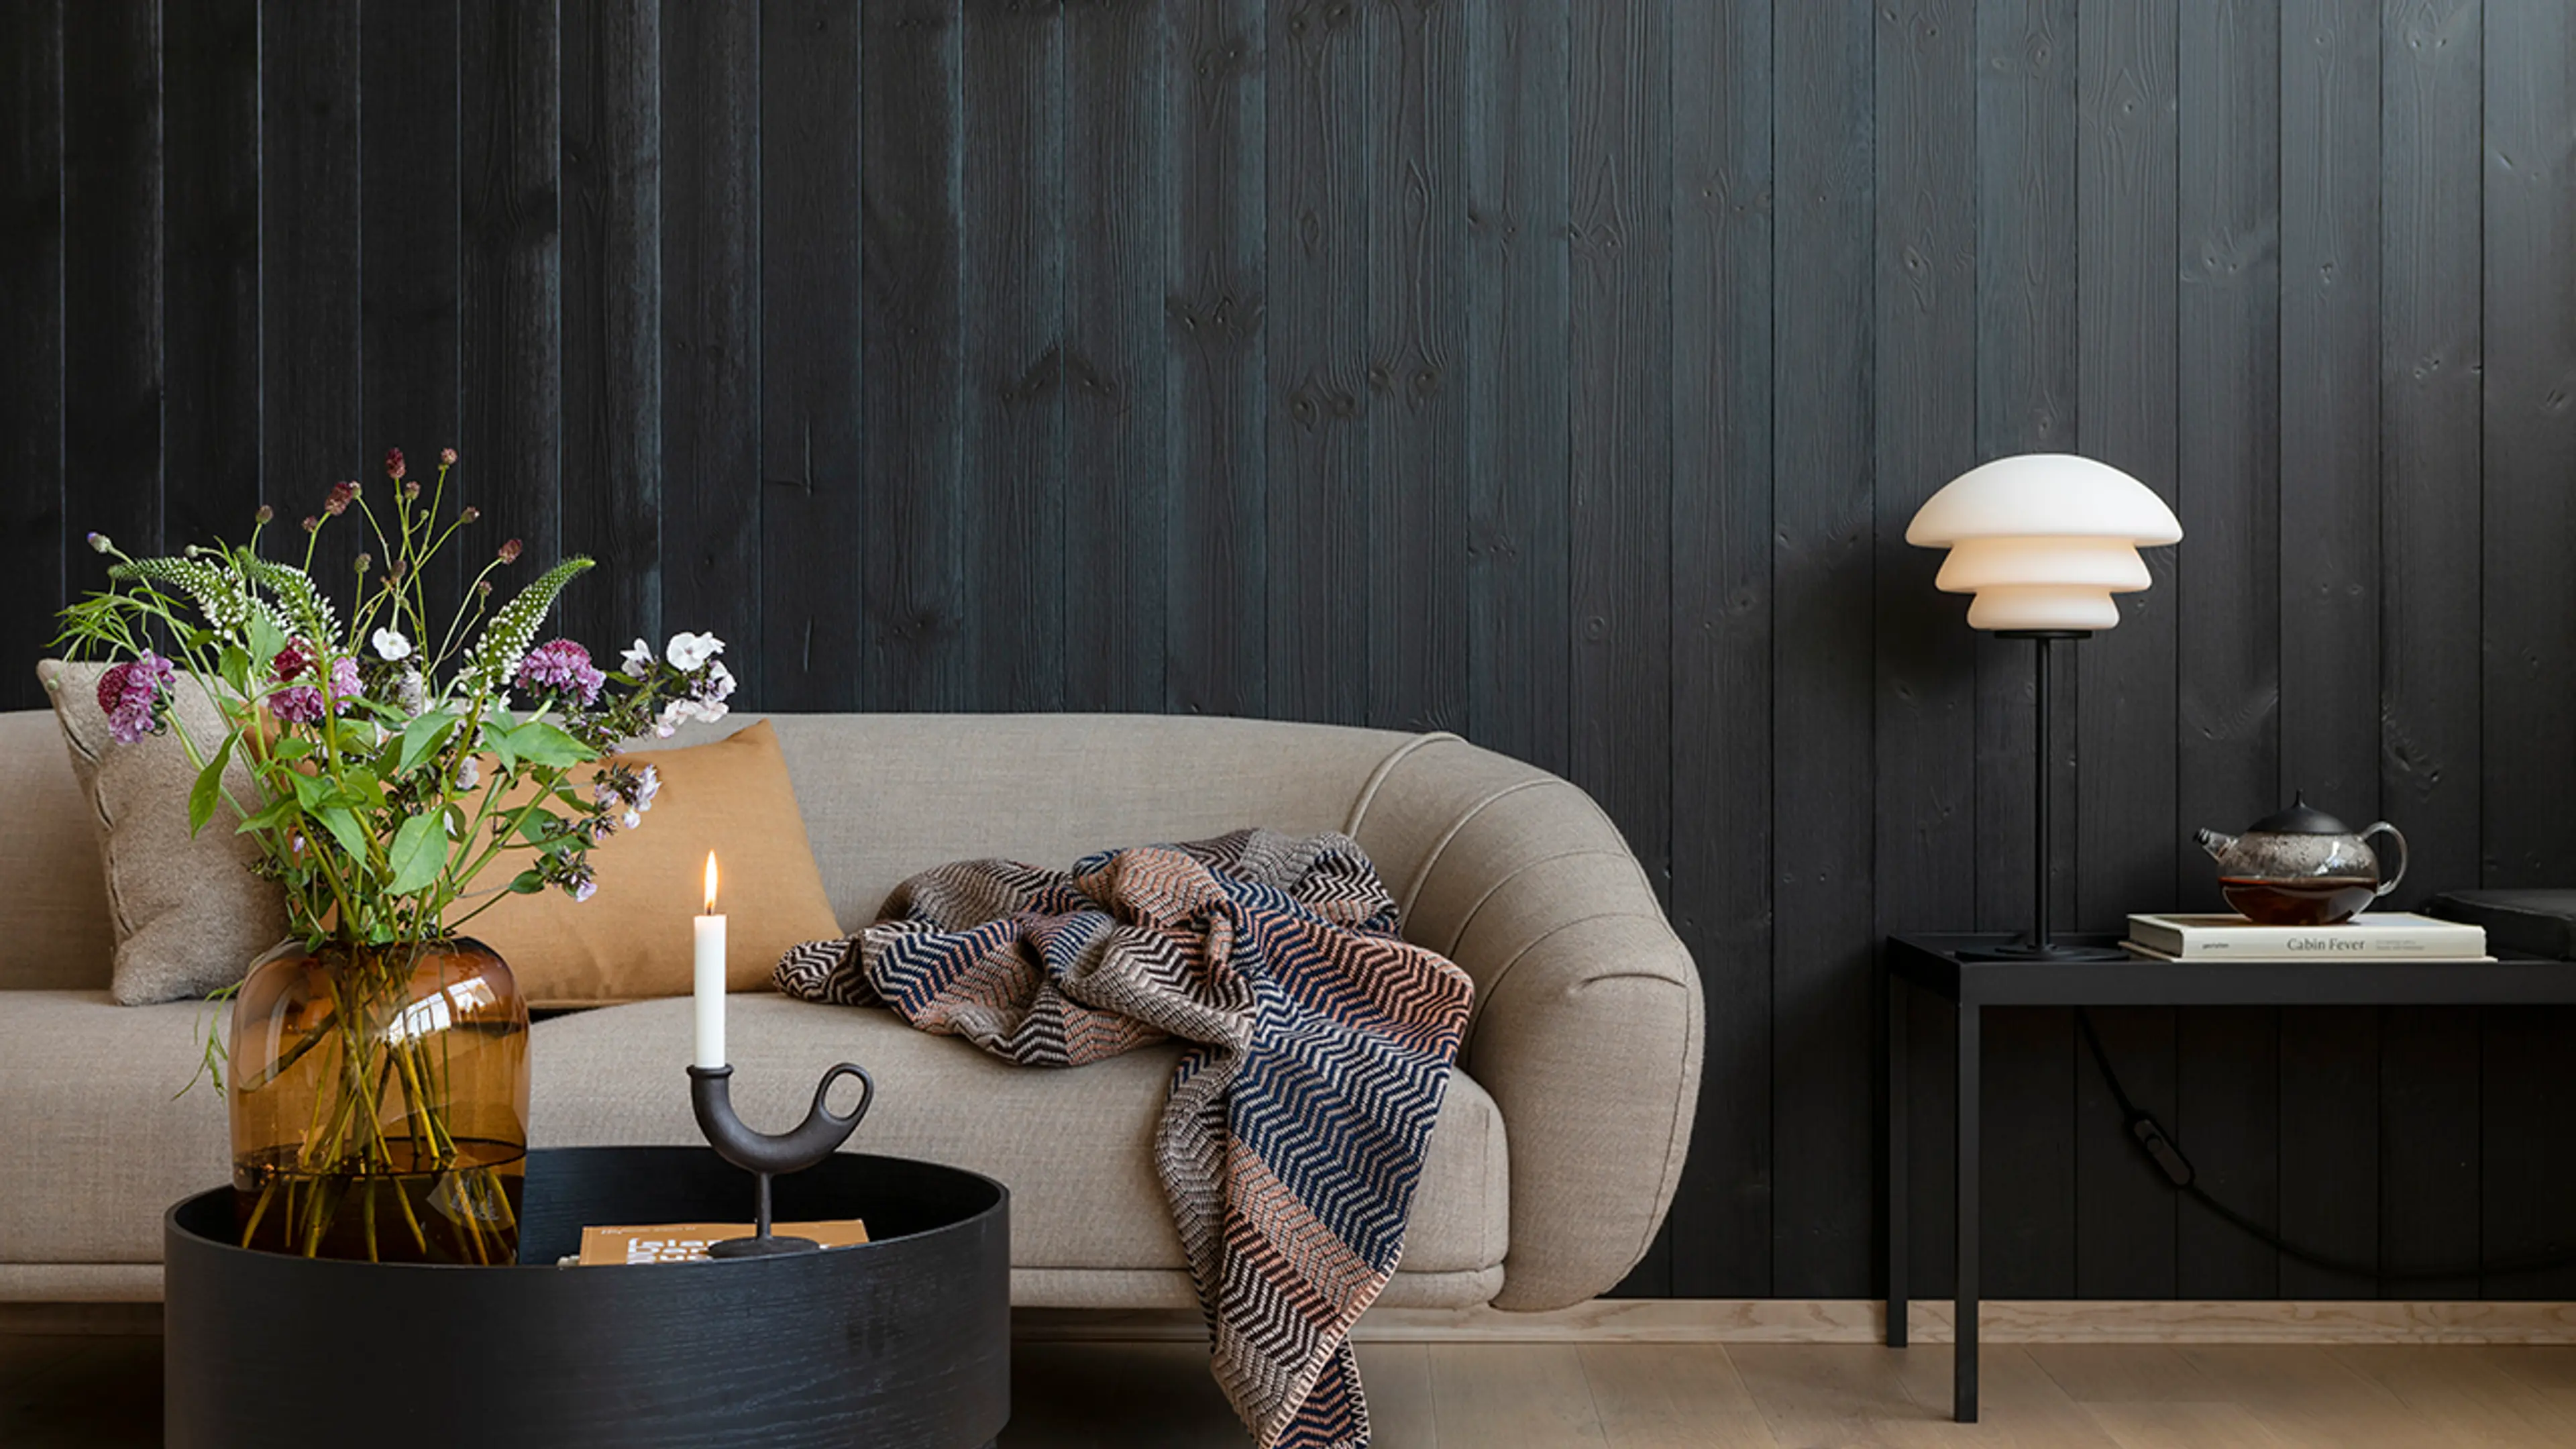 Moderne hytteinteriør hvor stue er i svart trepanel og har svarte møbler med stramme linjer.